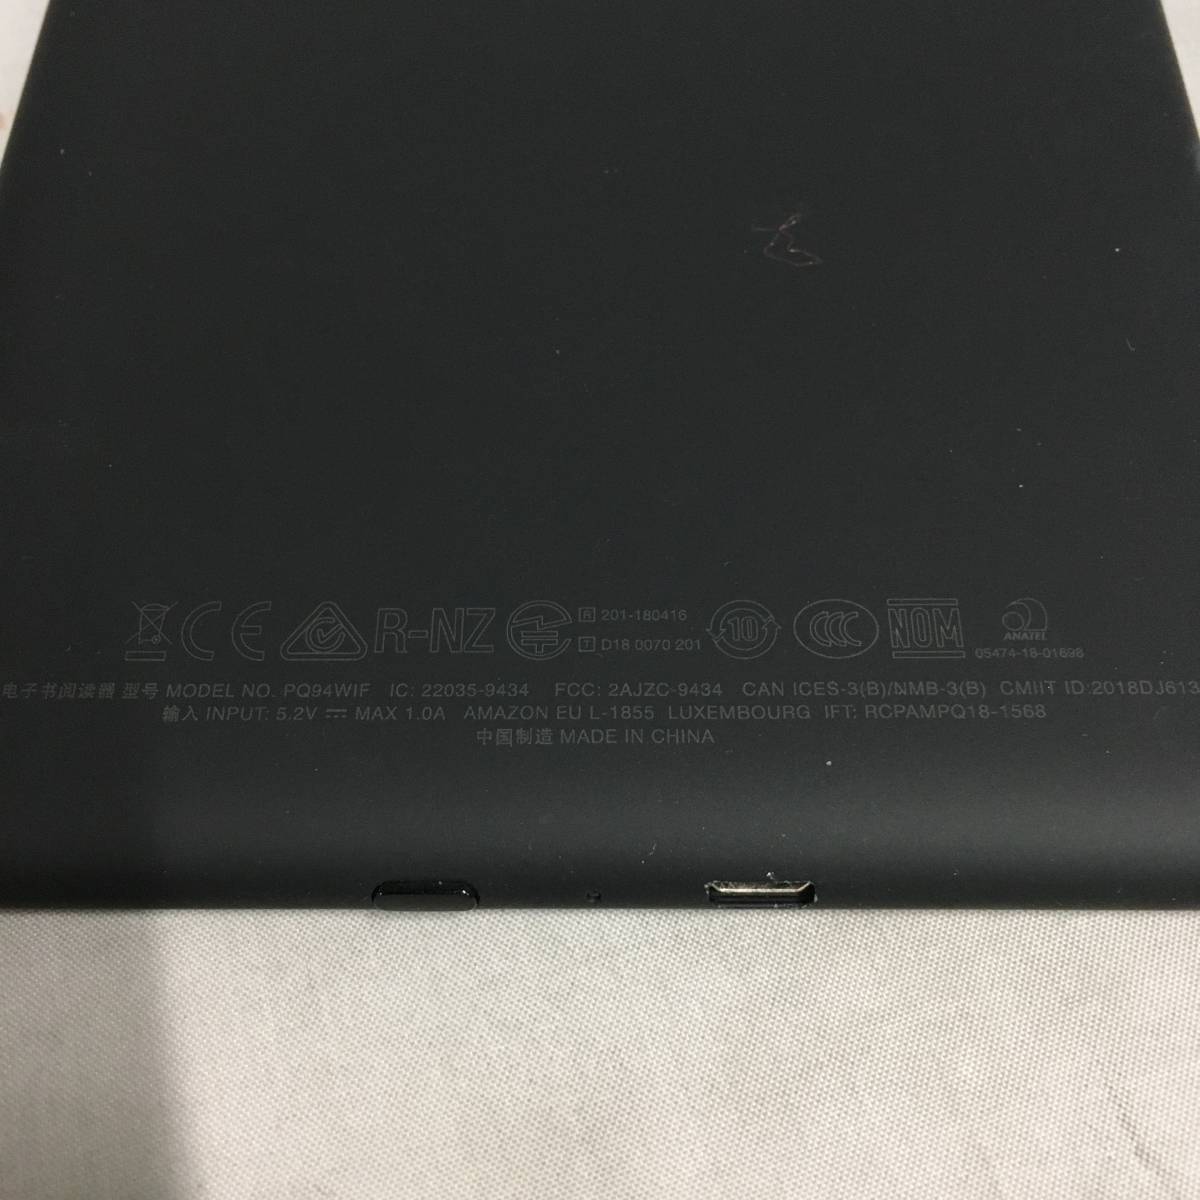 #Amazon Amazon kindle Paperwhite no. 10 generation E-reader PQ94WIF 32GB black [23/0322/01